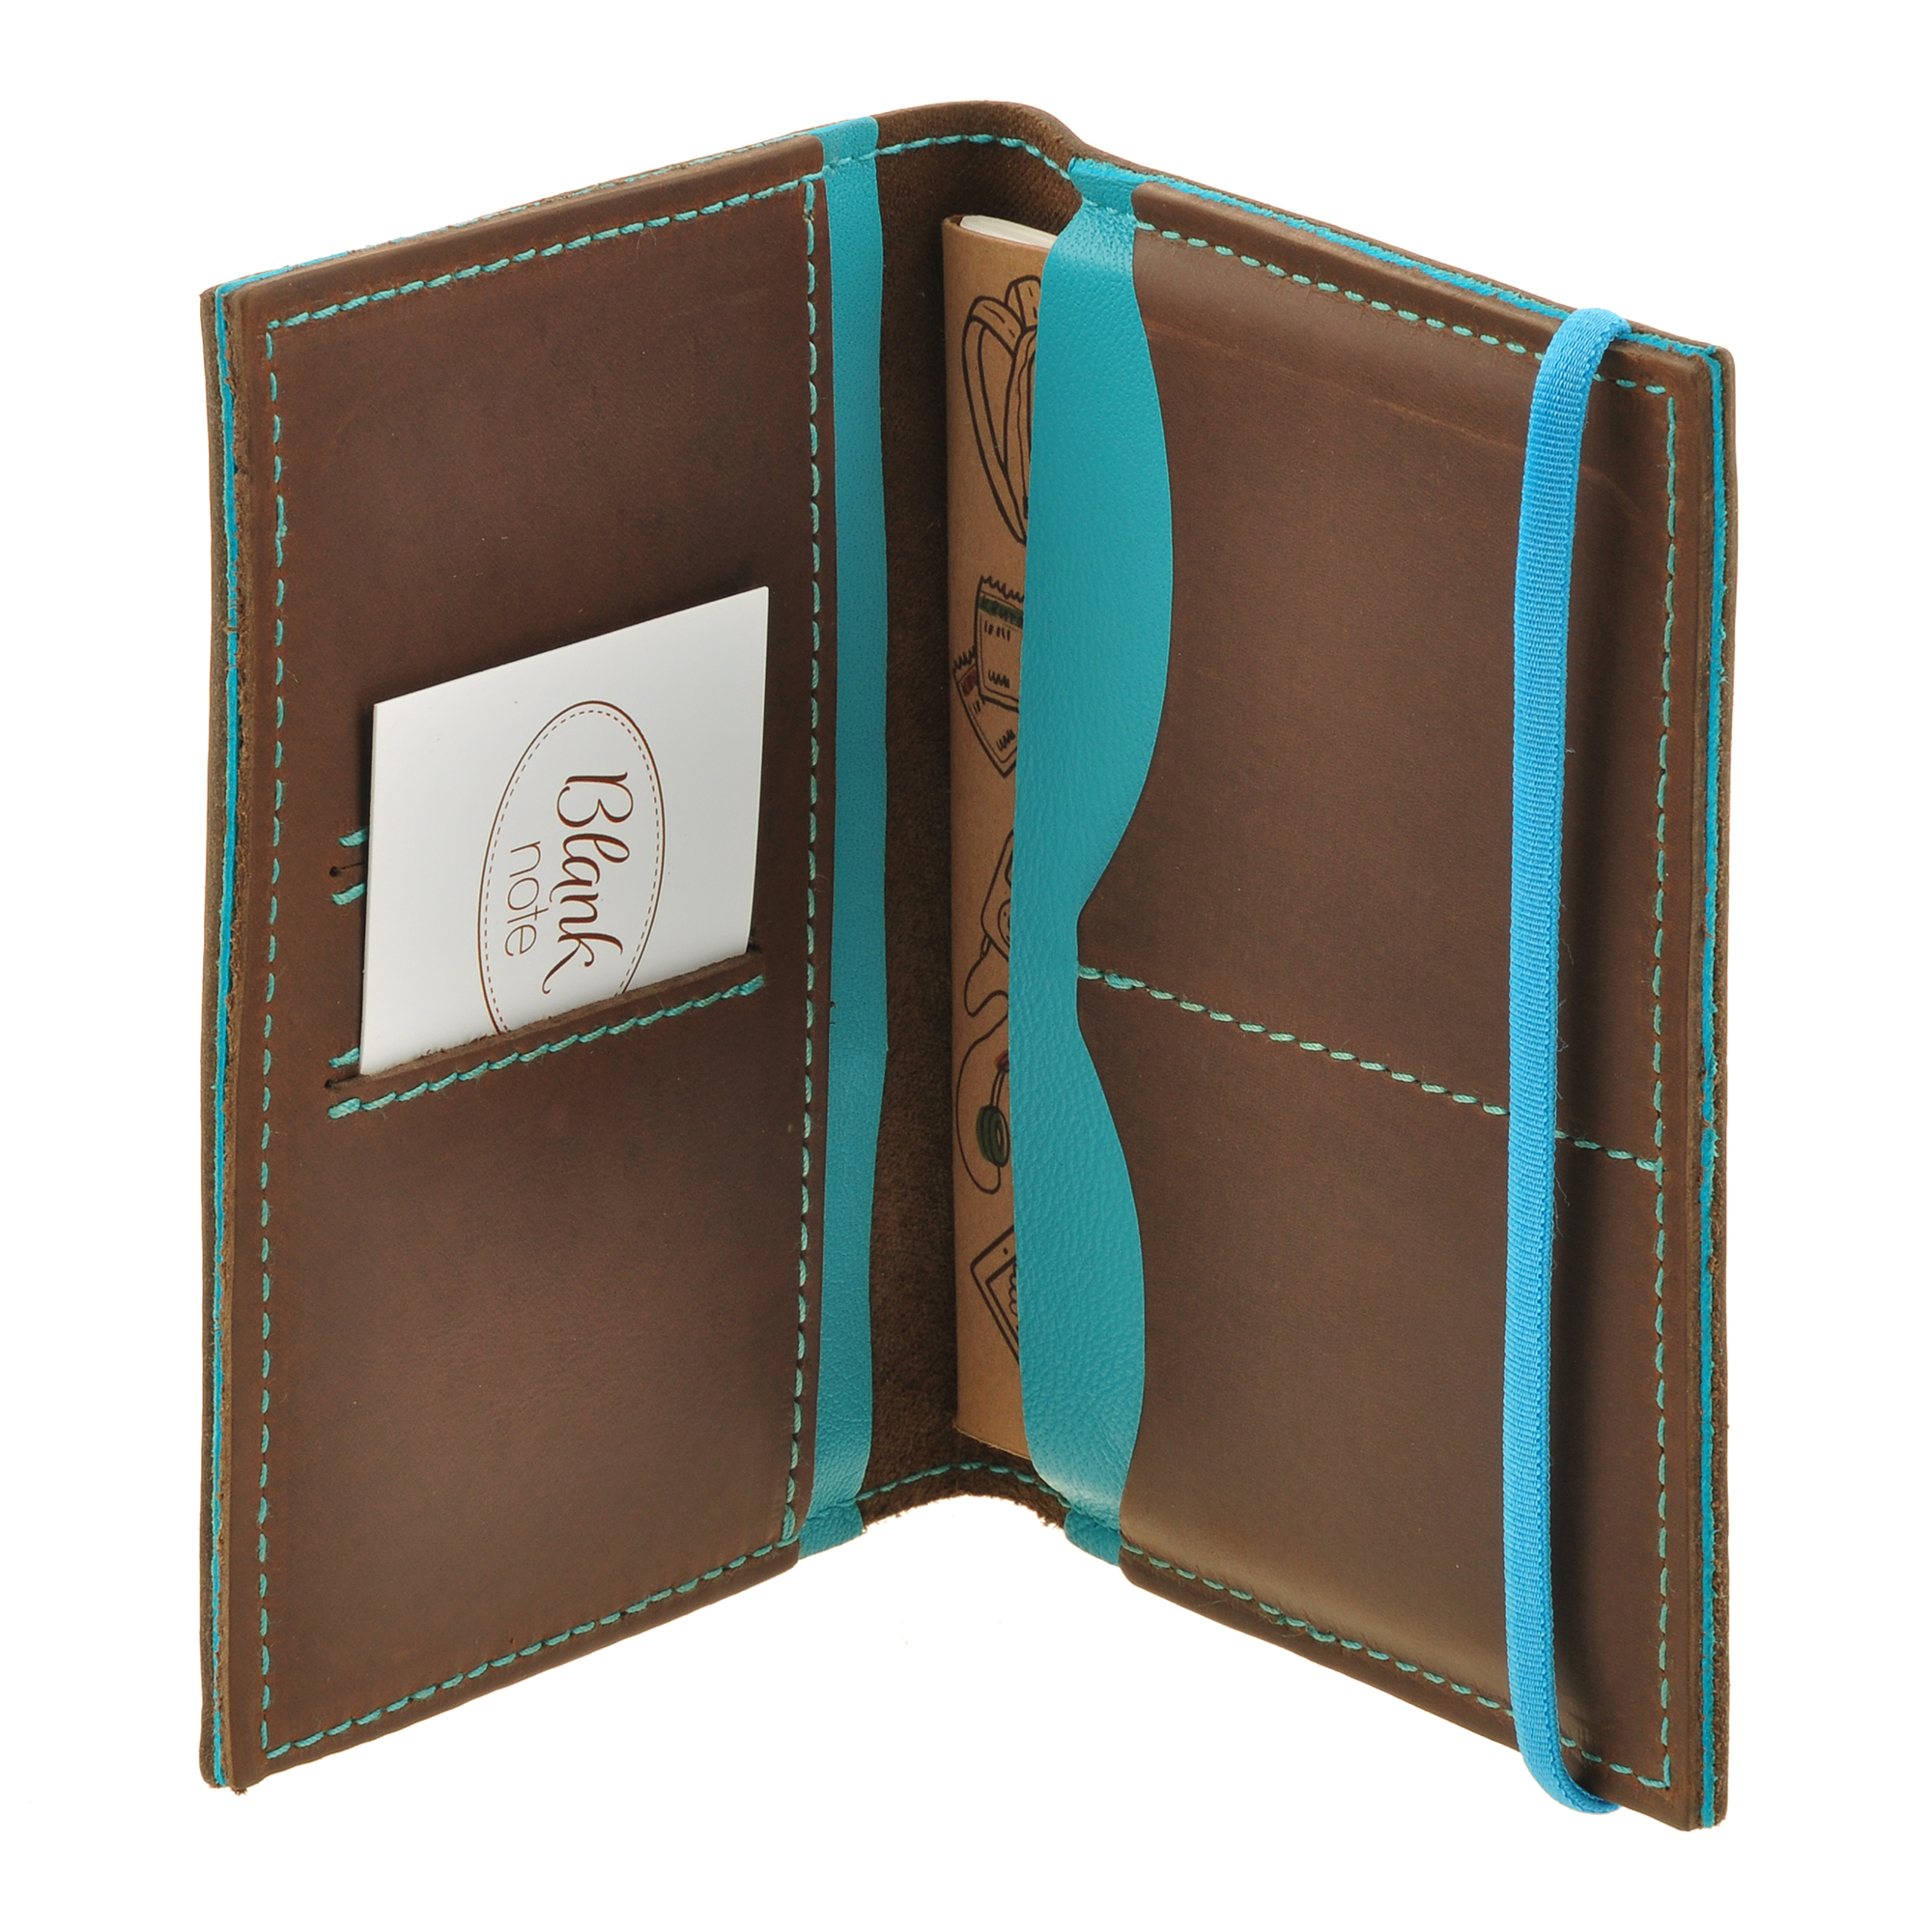 Фото 4Обложка для паспорта на резинке BlankNote 2.0 Орех-Тиффани натуральная кожа коричнево-голубая BN-OP-2-o-t